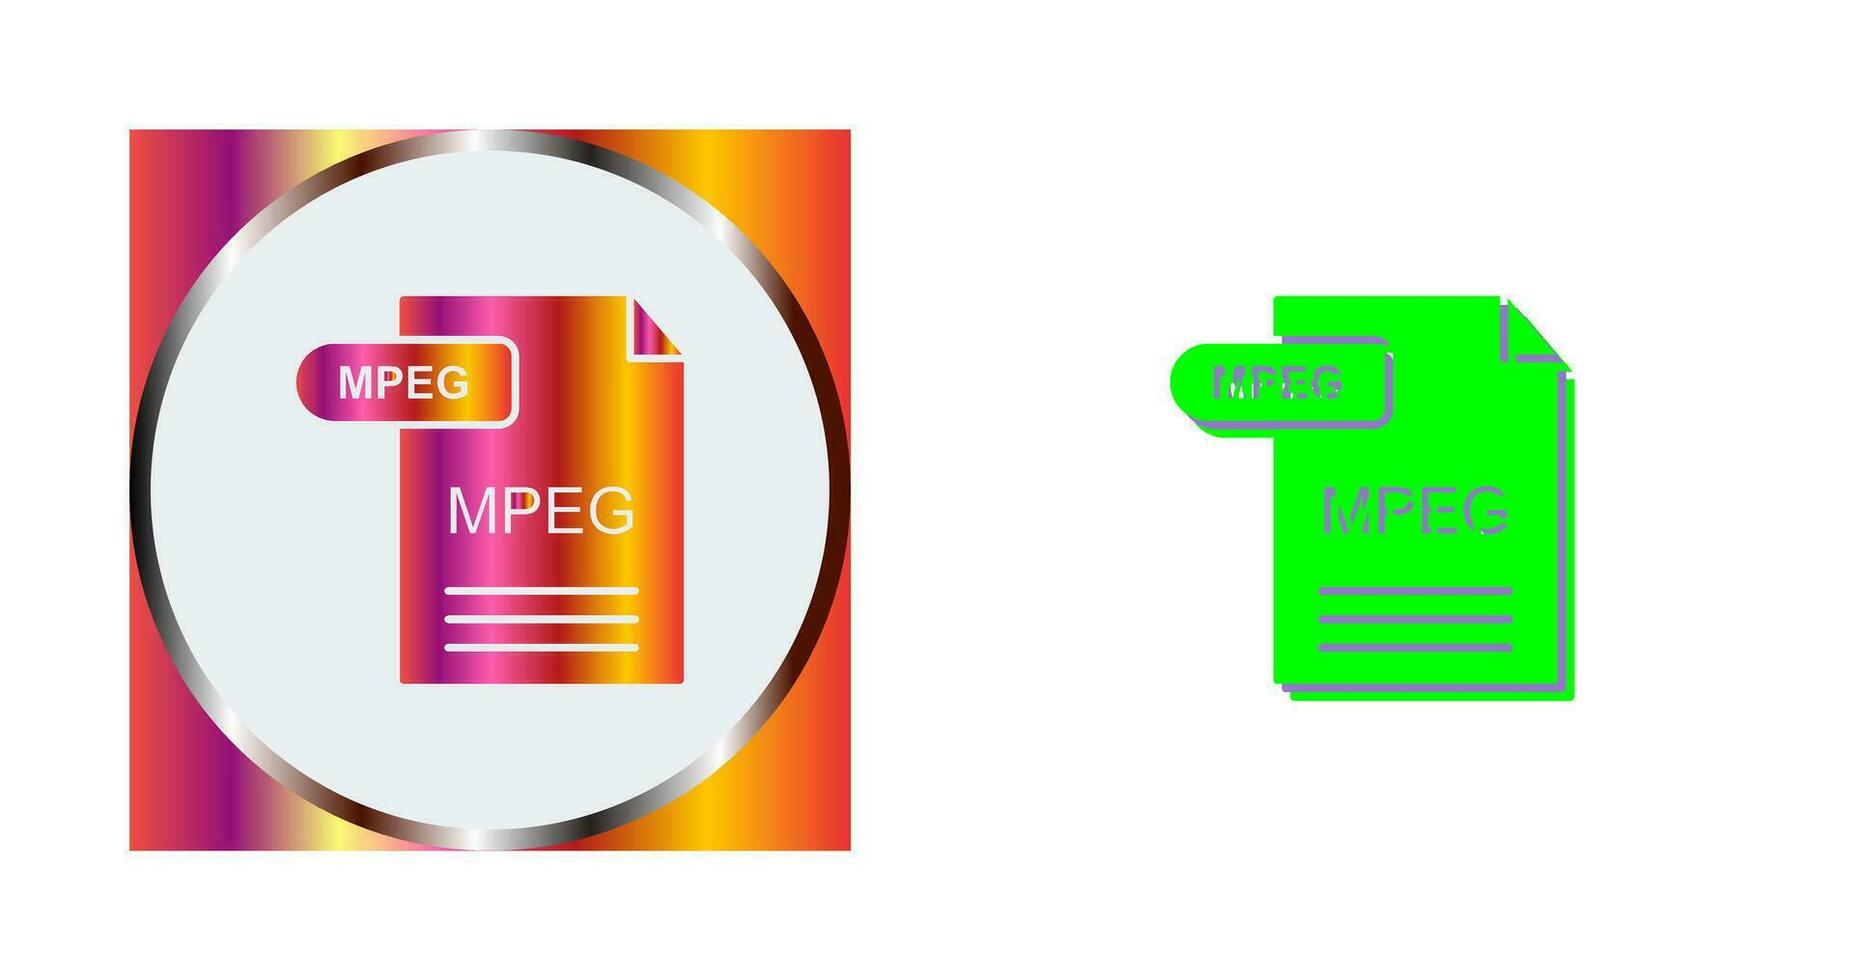 MPEG Vector Icon